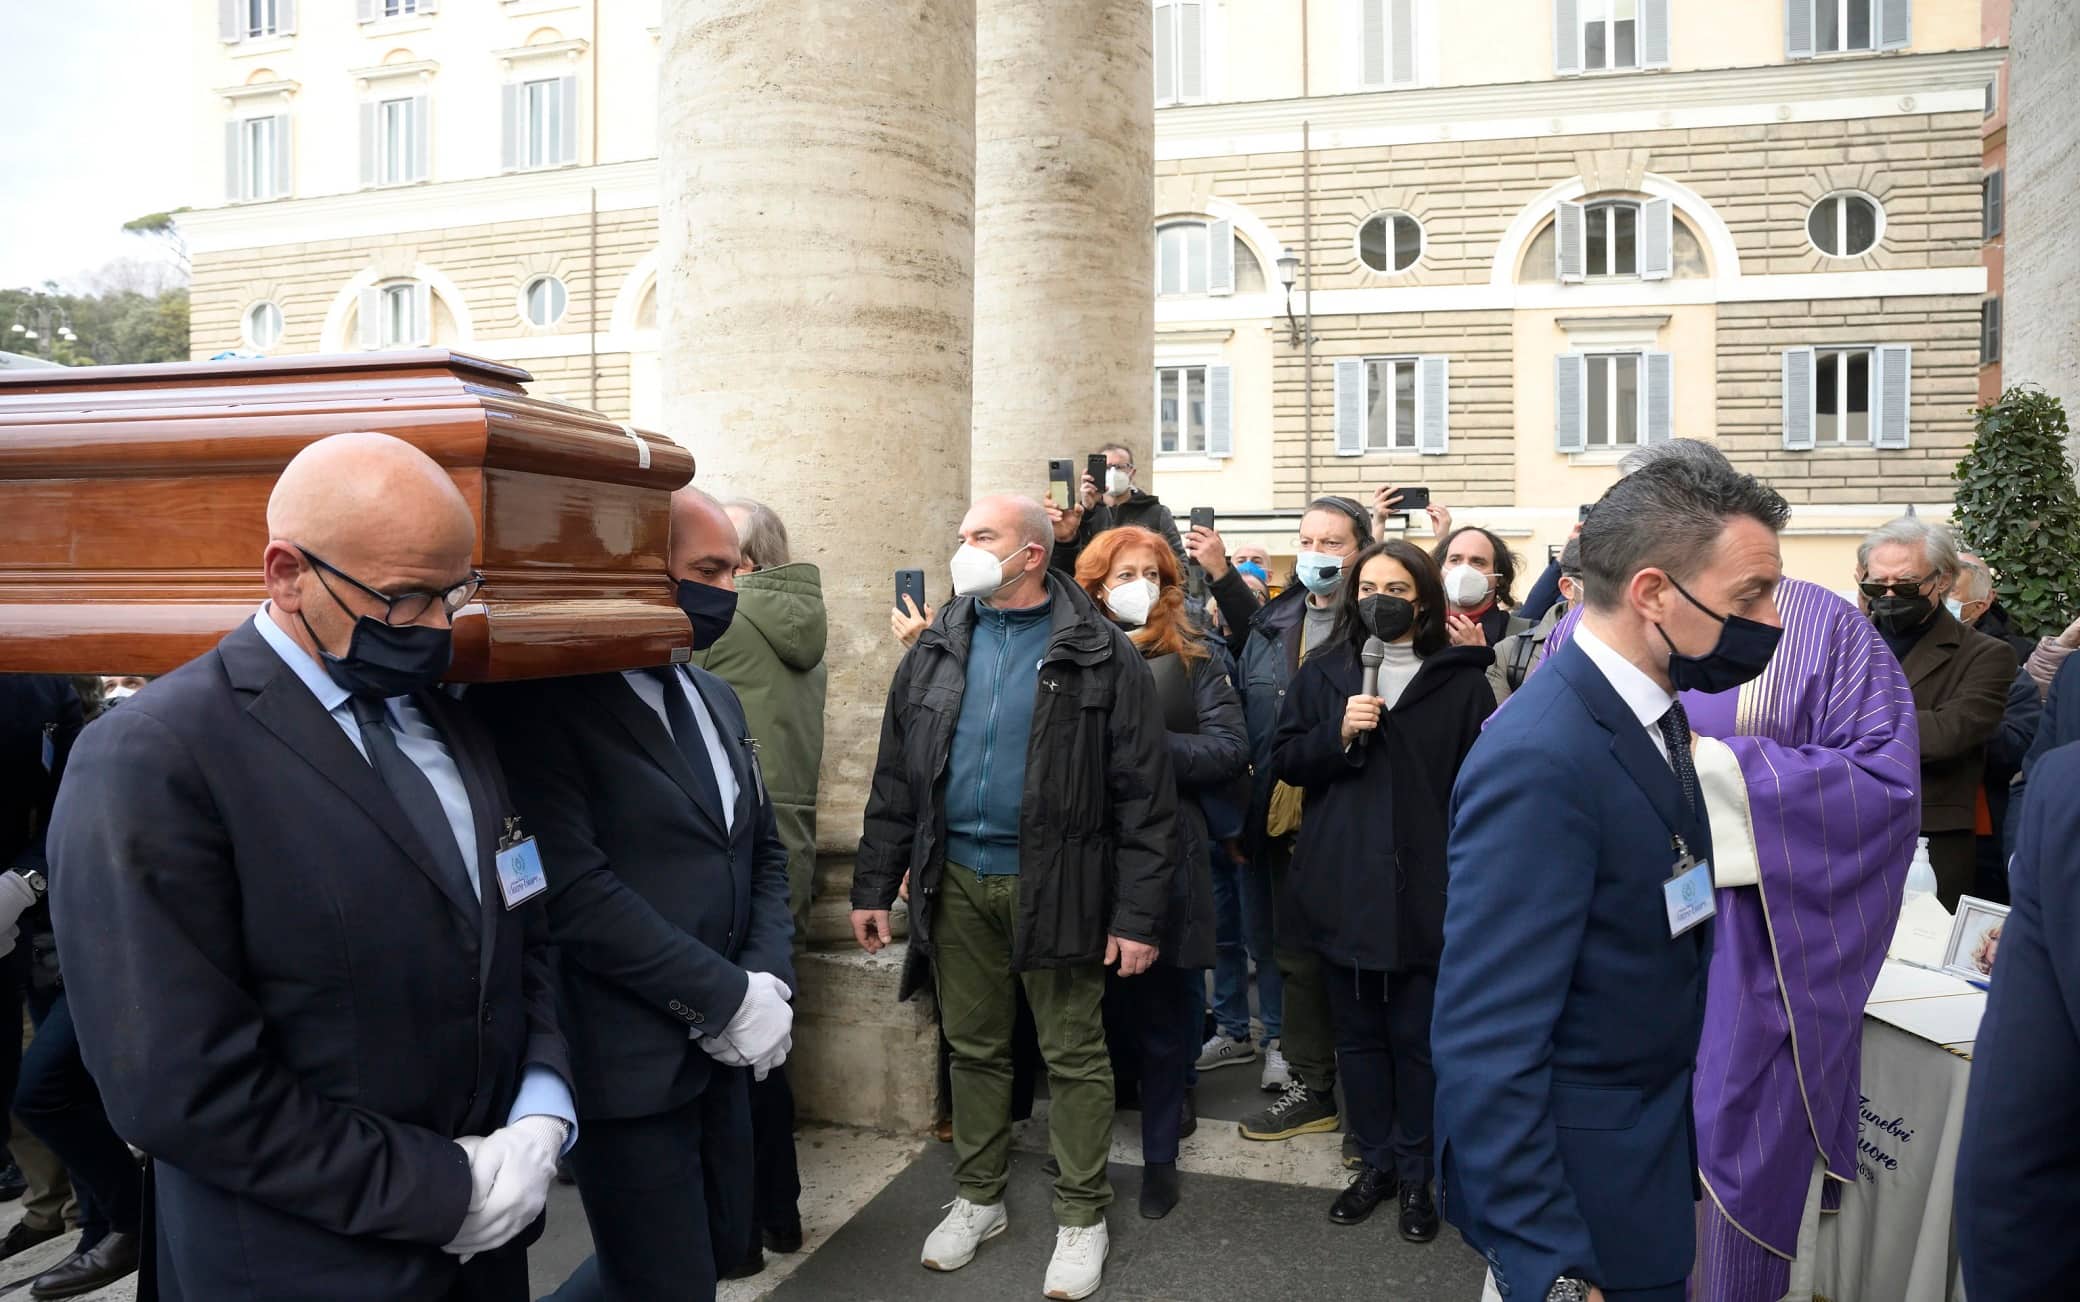 LÕarrivo del feretro dellÕattrice Monica Vitti per i funerali presso la Chiesa degli Artisti. Roma, 5 febbraio 2022. ANSA/CLAUDIO PERI